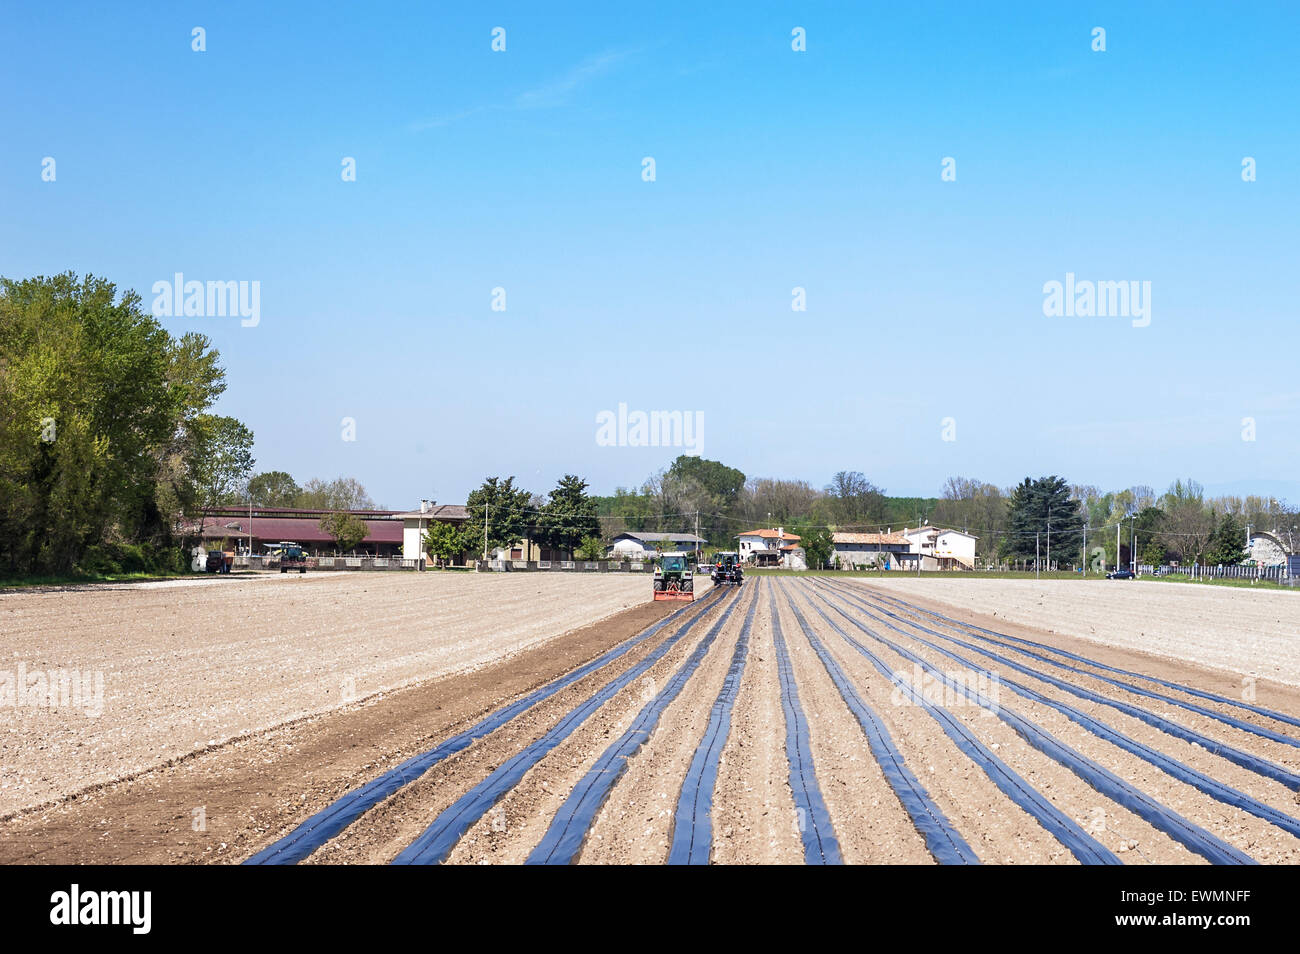 Il lavoro agricolo: preparare i campi per piantare le barbatelle di viti Foto Stock